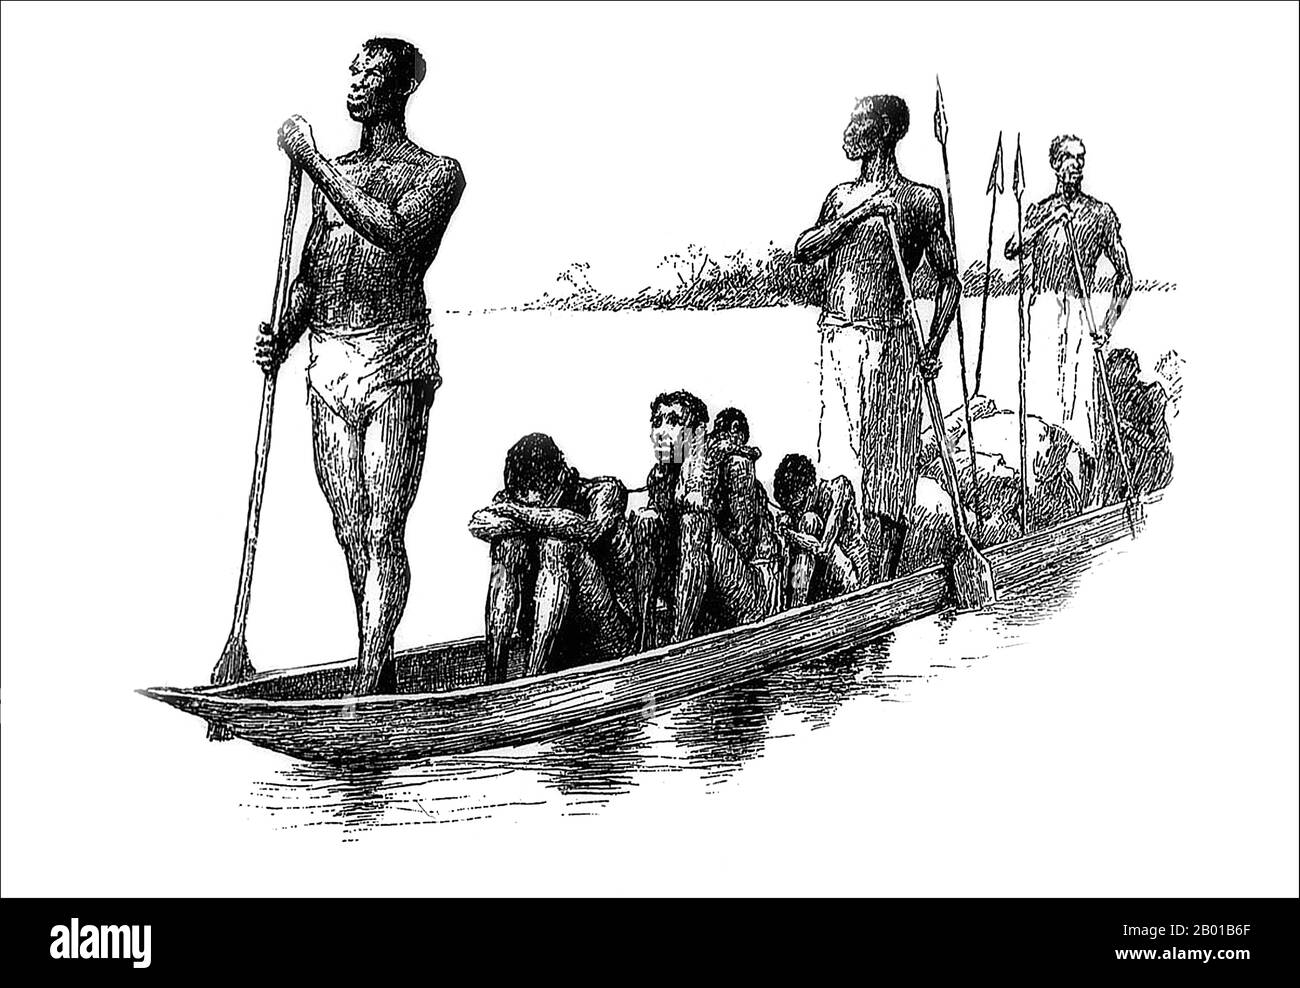 Zentralafrika: Gefangene Sklaven werden mit dem Kanu über einen Fluss transportiert. Illustration von Edward Winsor Kemble (18. Januar 1861 - 19. September 1933), 1880s. Schwarze Sklaven wurden von Afrika aus über eine Reihe von Routen nach Norden durch die Sahara-Wüste und auf dem Seeweg nach Arabien und den Persischen Golf in die muslimische Welt importiert. Die Schätzungen der Zahl der Beteiligten variieren stark, aber es scheint, dass es leicht 10 Millionen gegeben haben könnte, vielleicht sogar doppelt so viele. Zwei Drittel der afrikanischen Sklaven waren weiblich. Die Männchen galten als lästig. Stockfoto